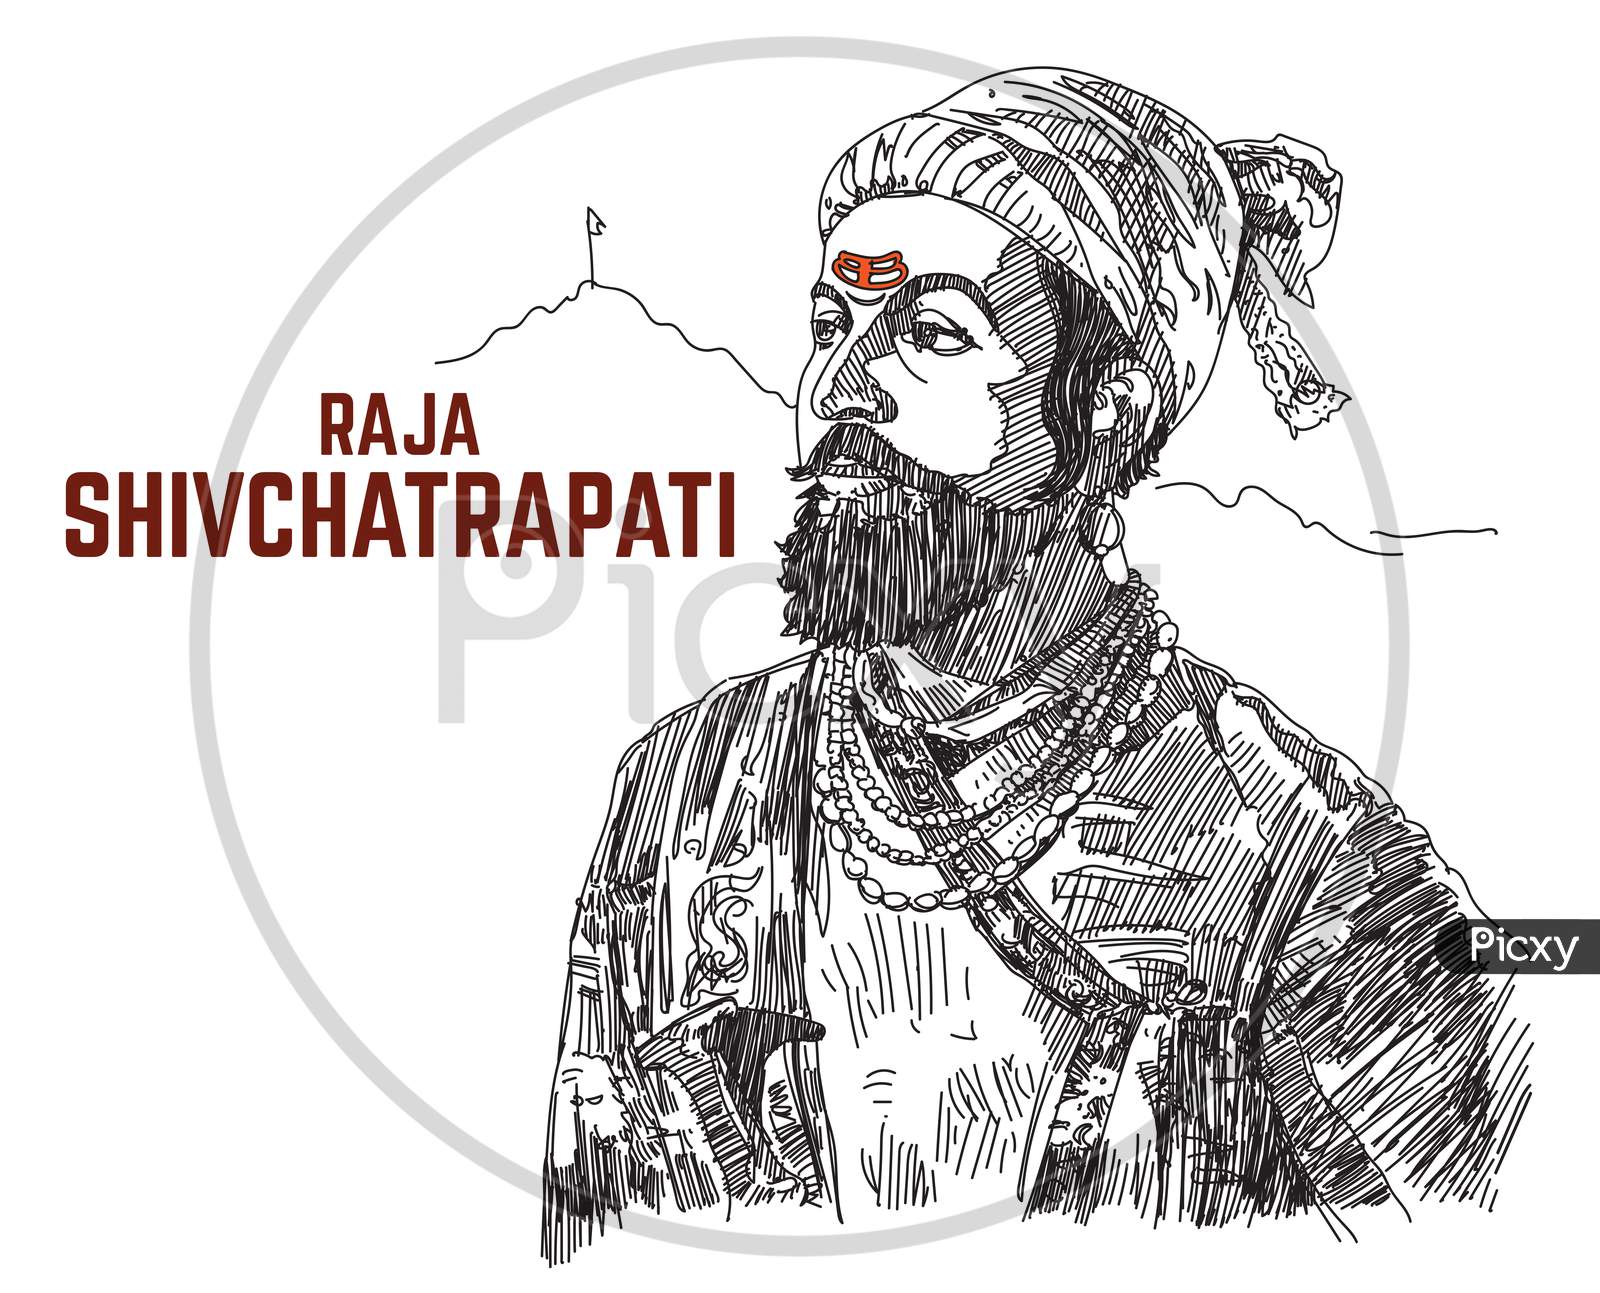 Raja Shivchattrapati